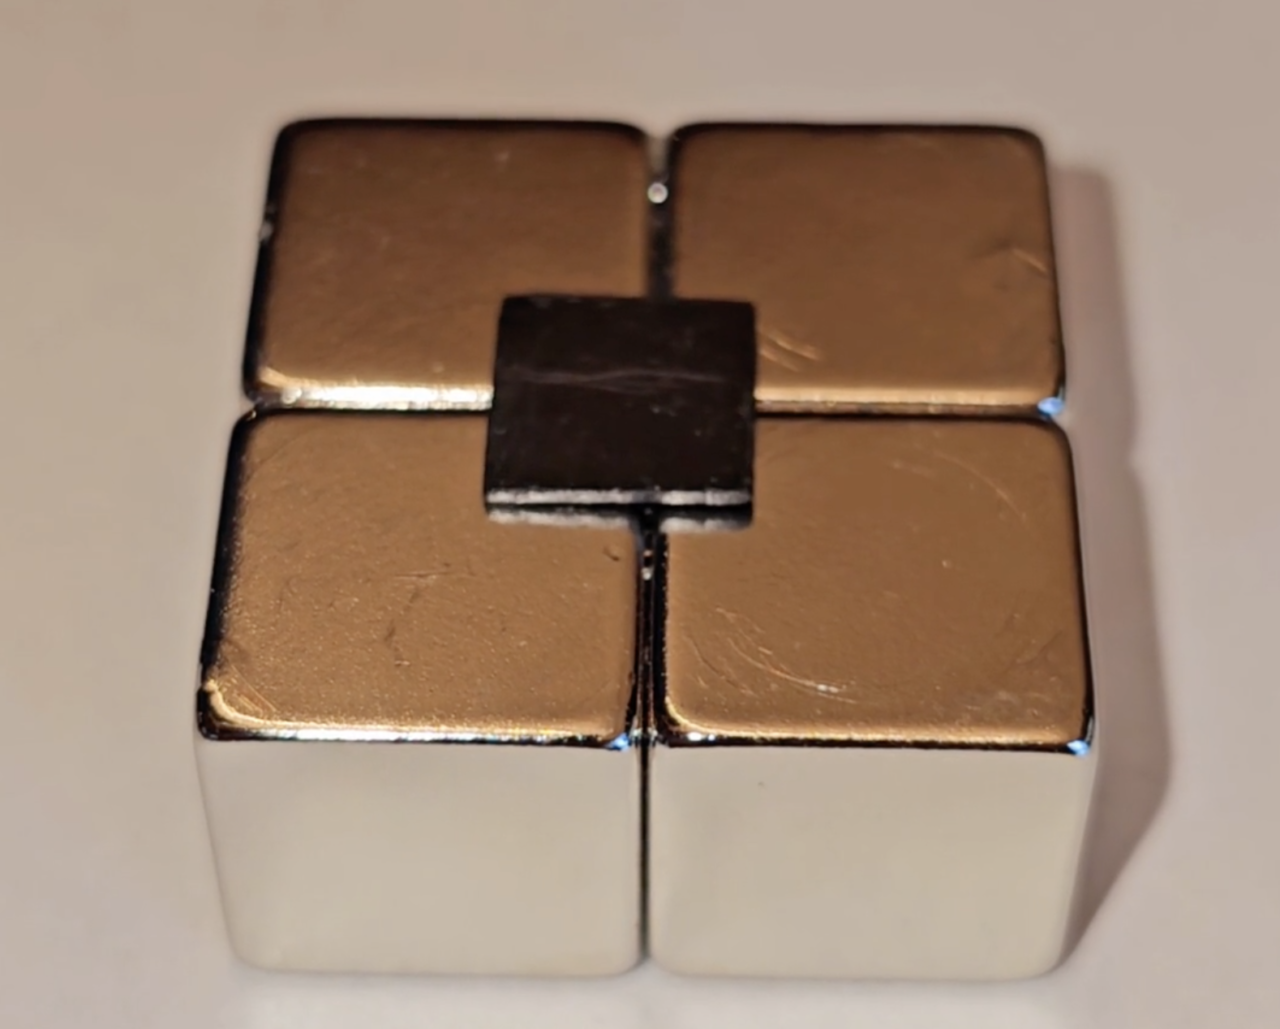 Złota kostka typu Rubik's Cube z jednym przekręconym środkowym elementem.